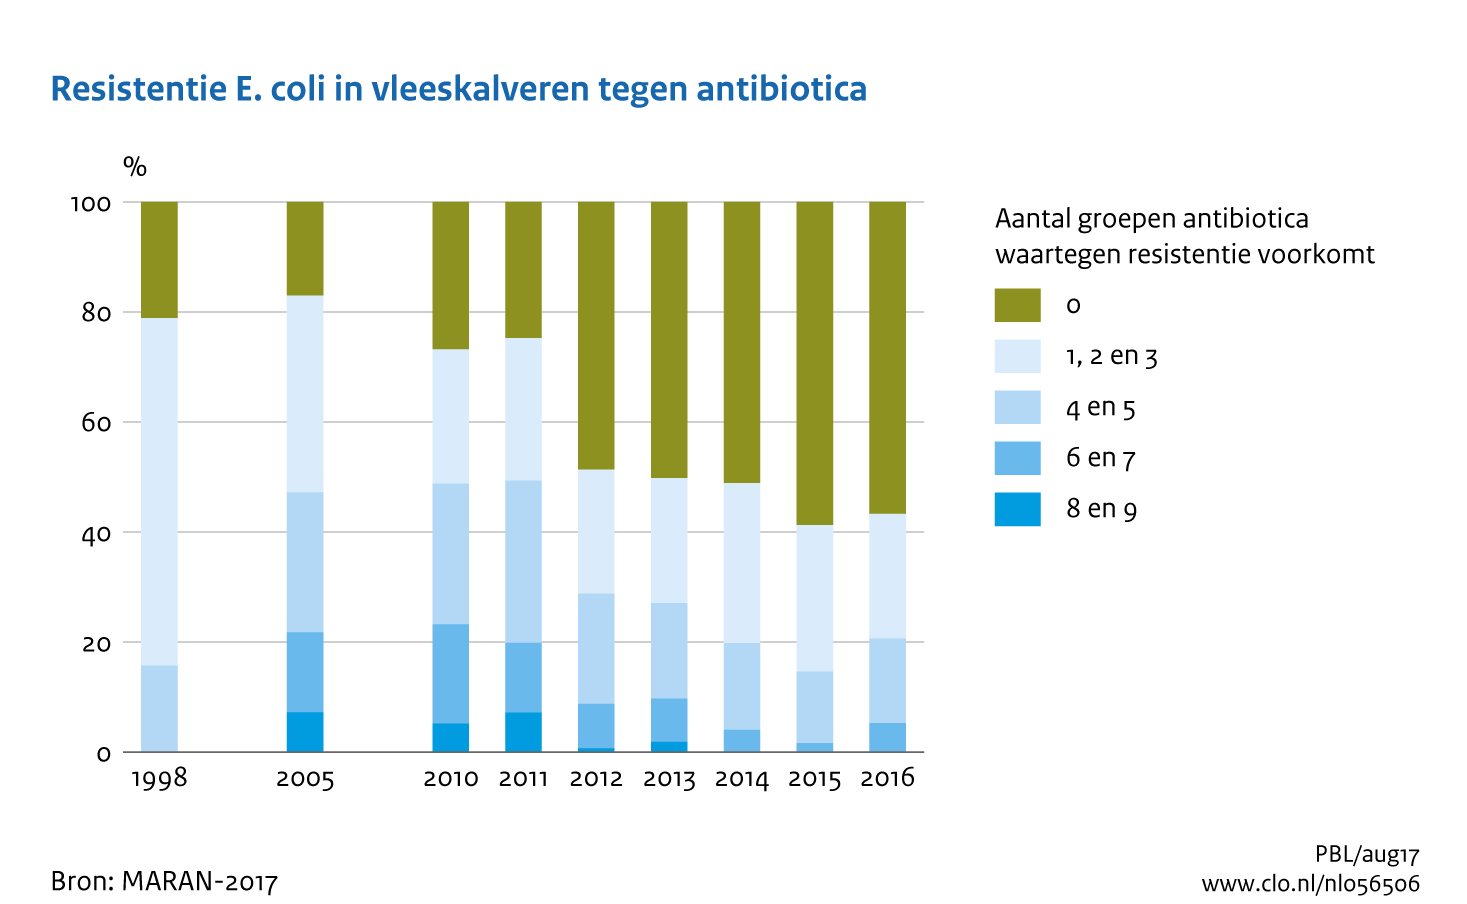 Figuur Resistentie E.coli in vleeskalveren tegen antibiotica. Meervoudige resistentie tegen antibiotica neemt af.. In de rest van de tekst wordt deze figuur uitgebreider uitgelegd.